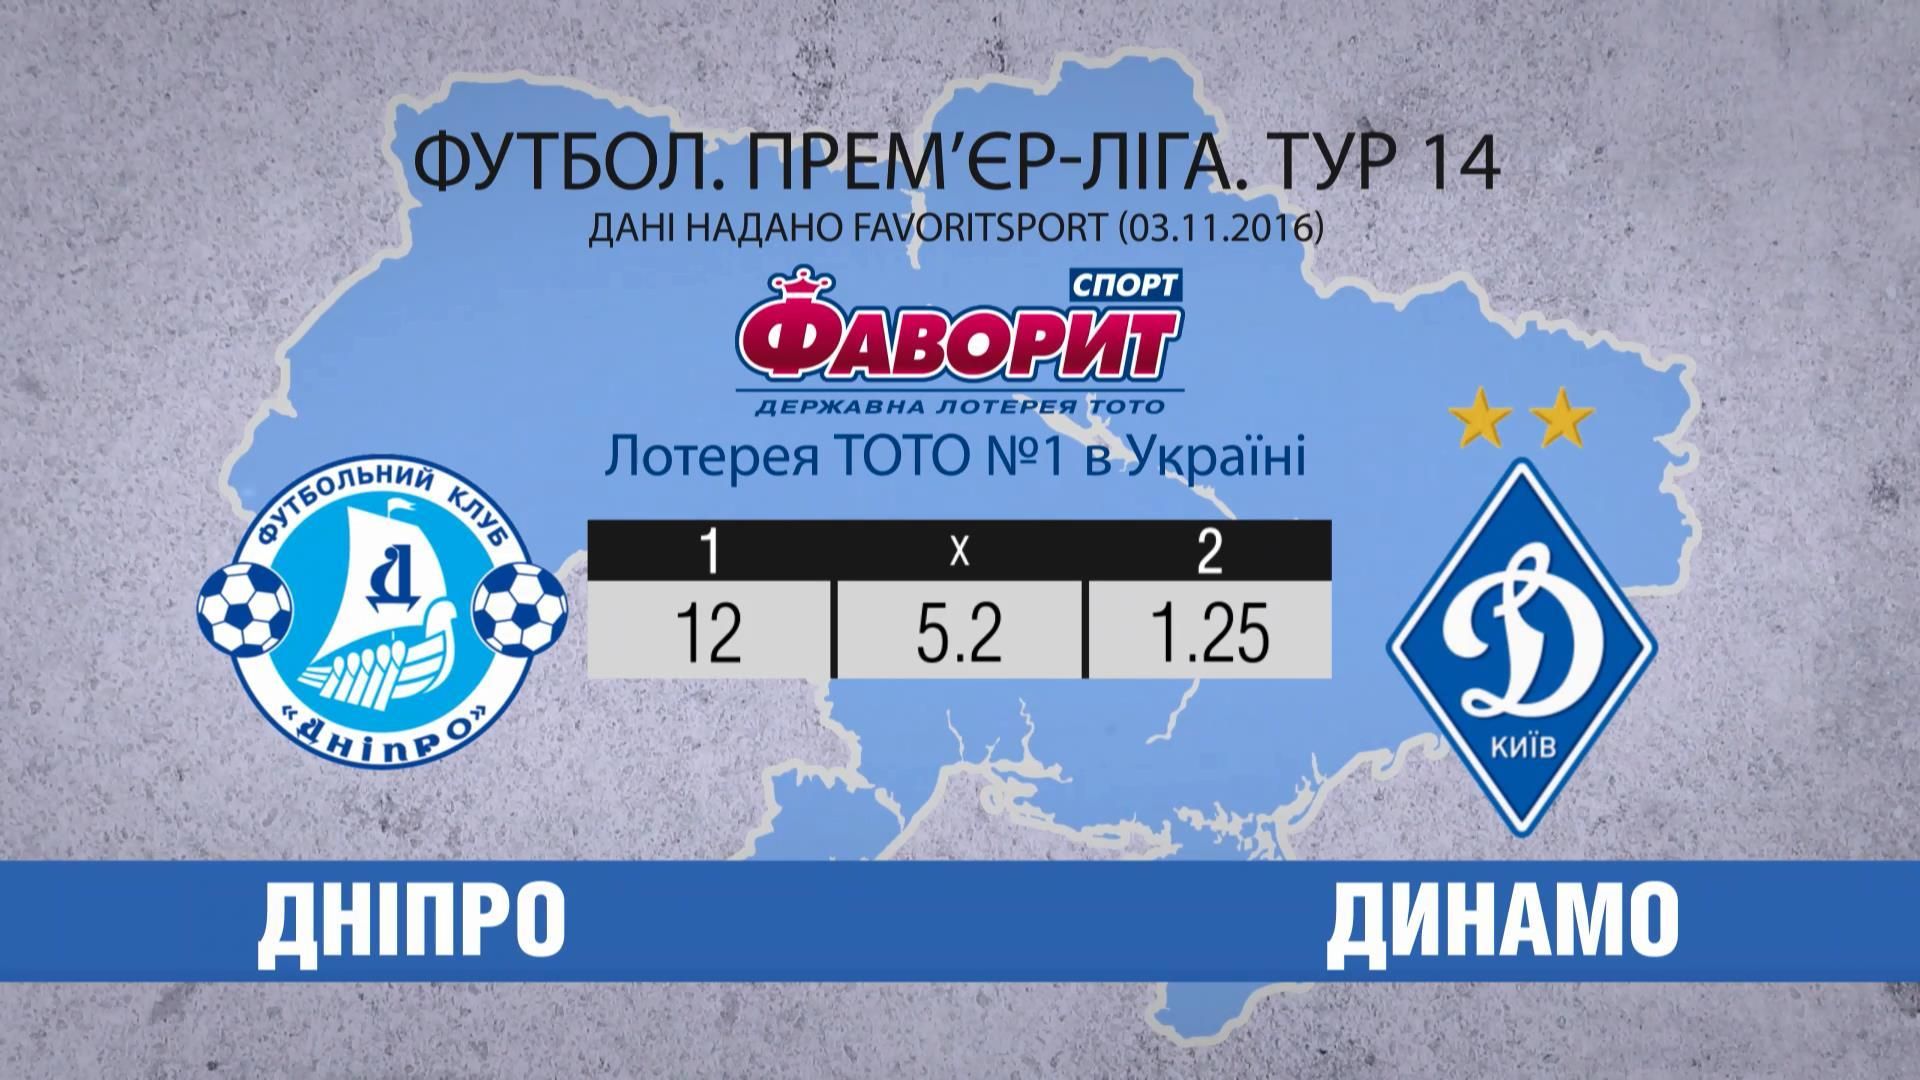 Чи створить "Дніпро" сенсацію в матчі з "Динамо"